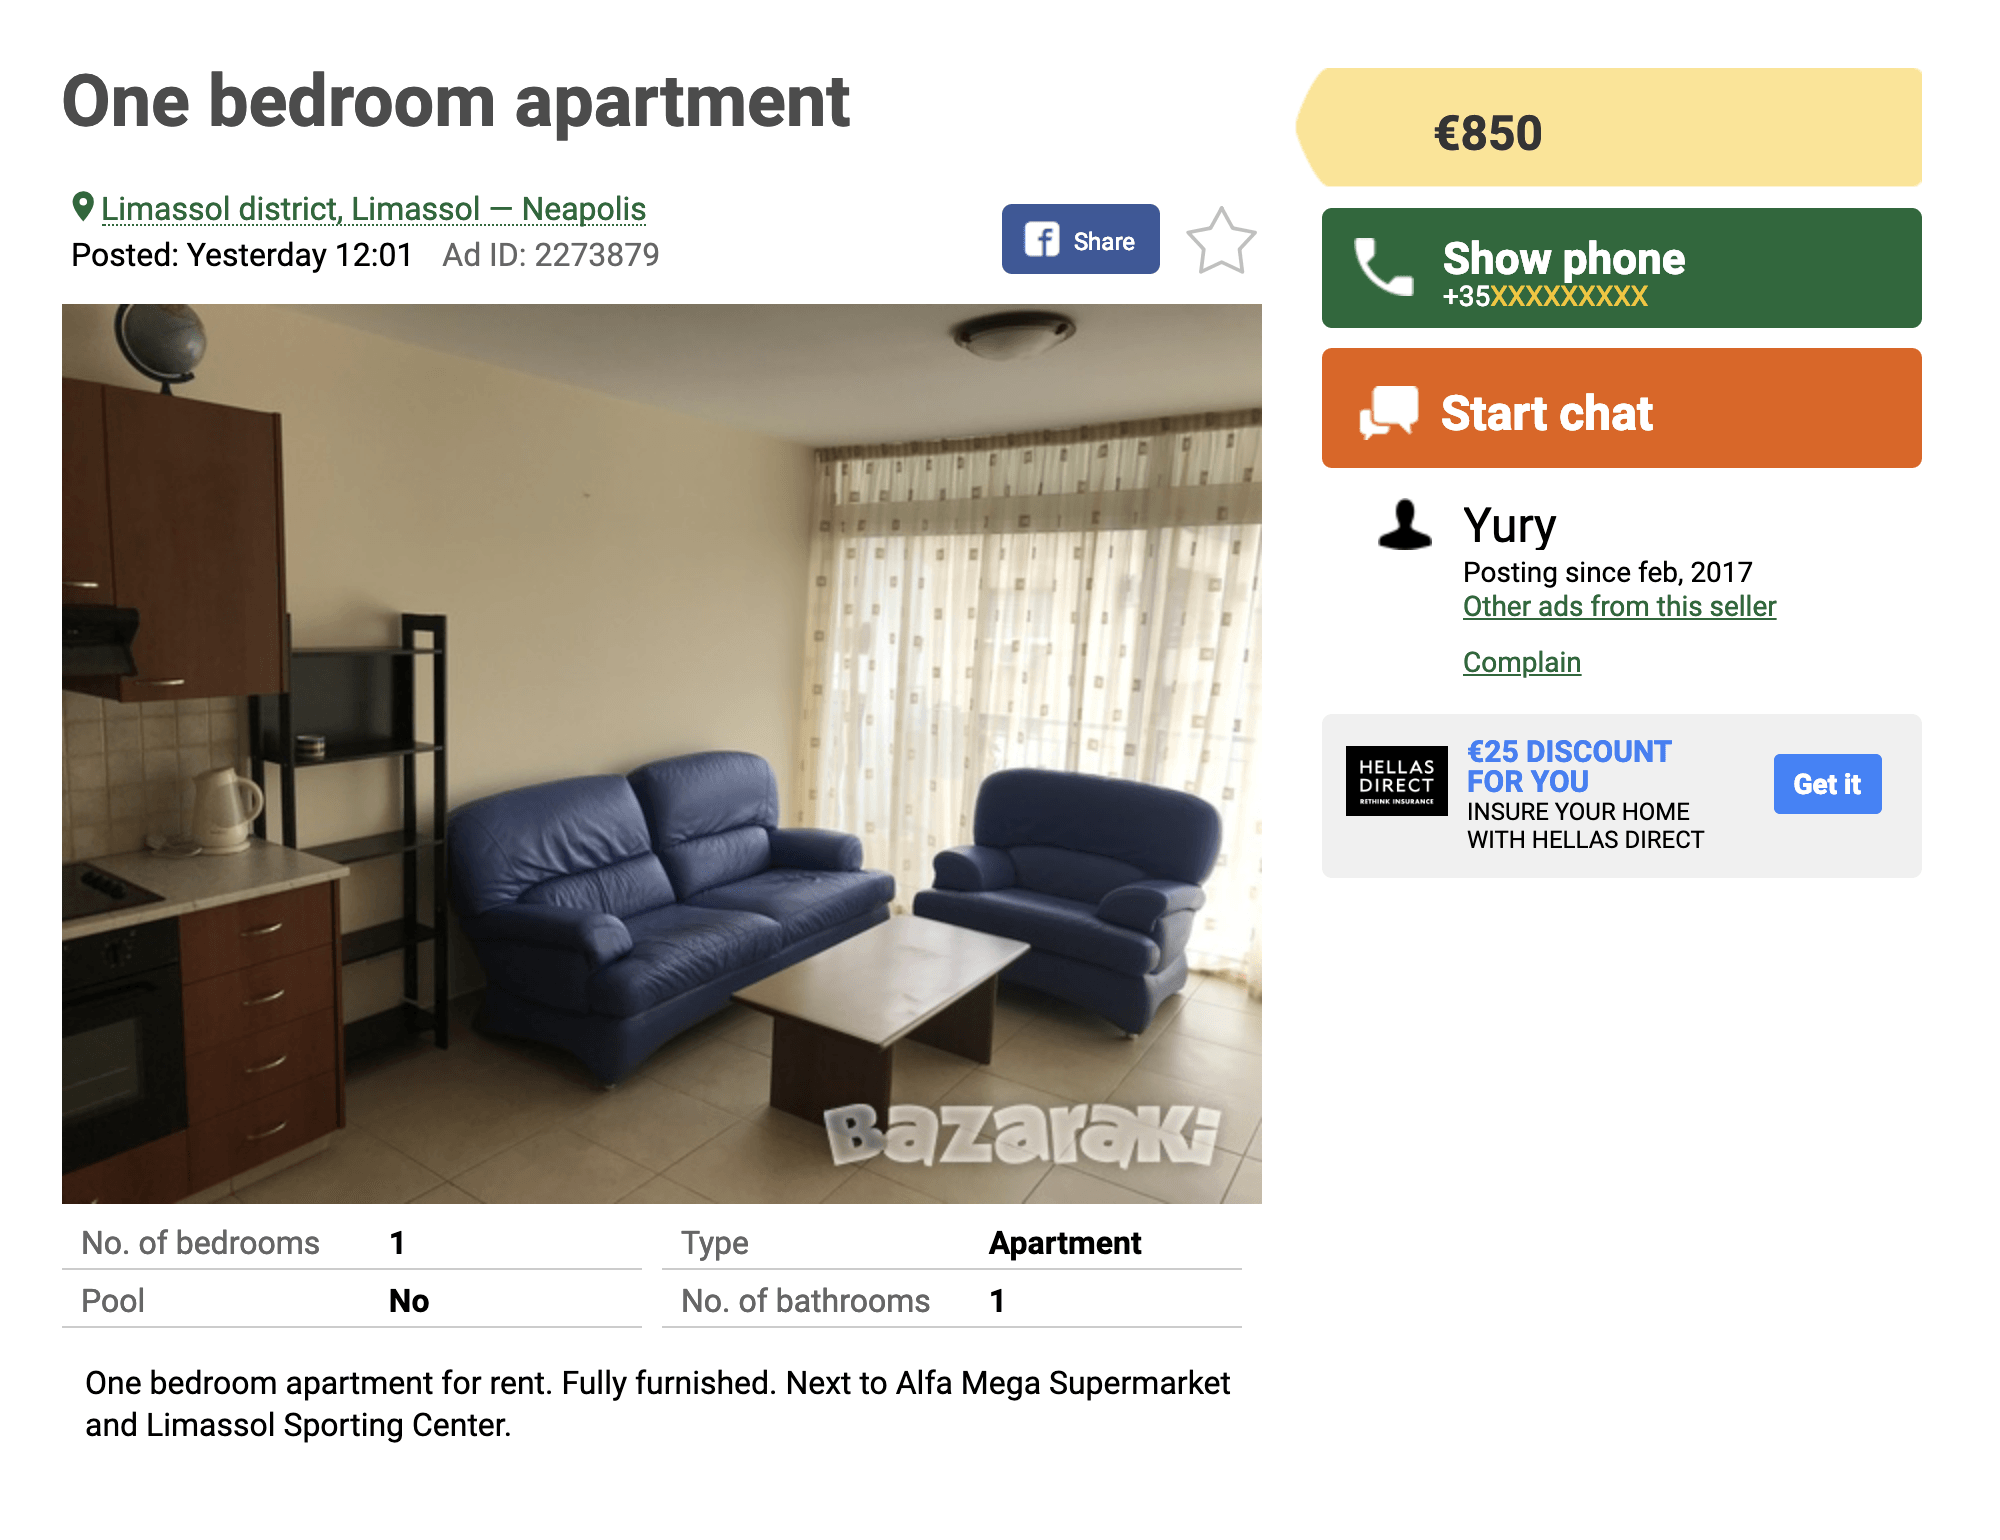 Аналог авито на кипре купить квартиру в хайфе израиль недорого